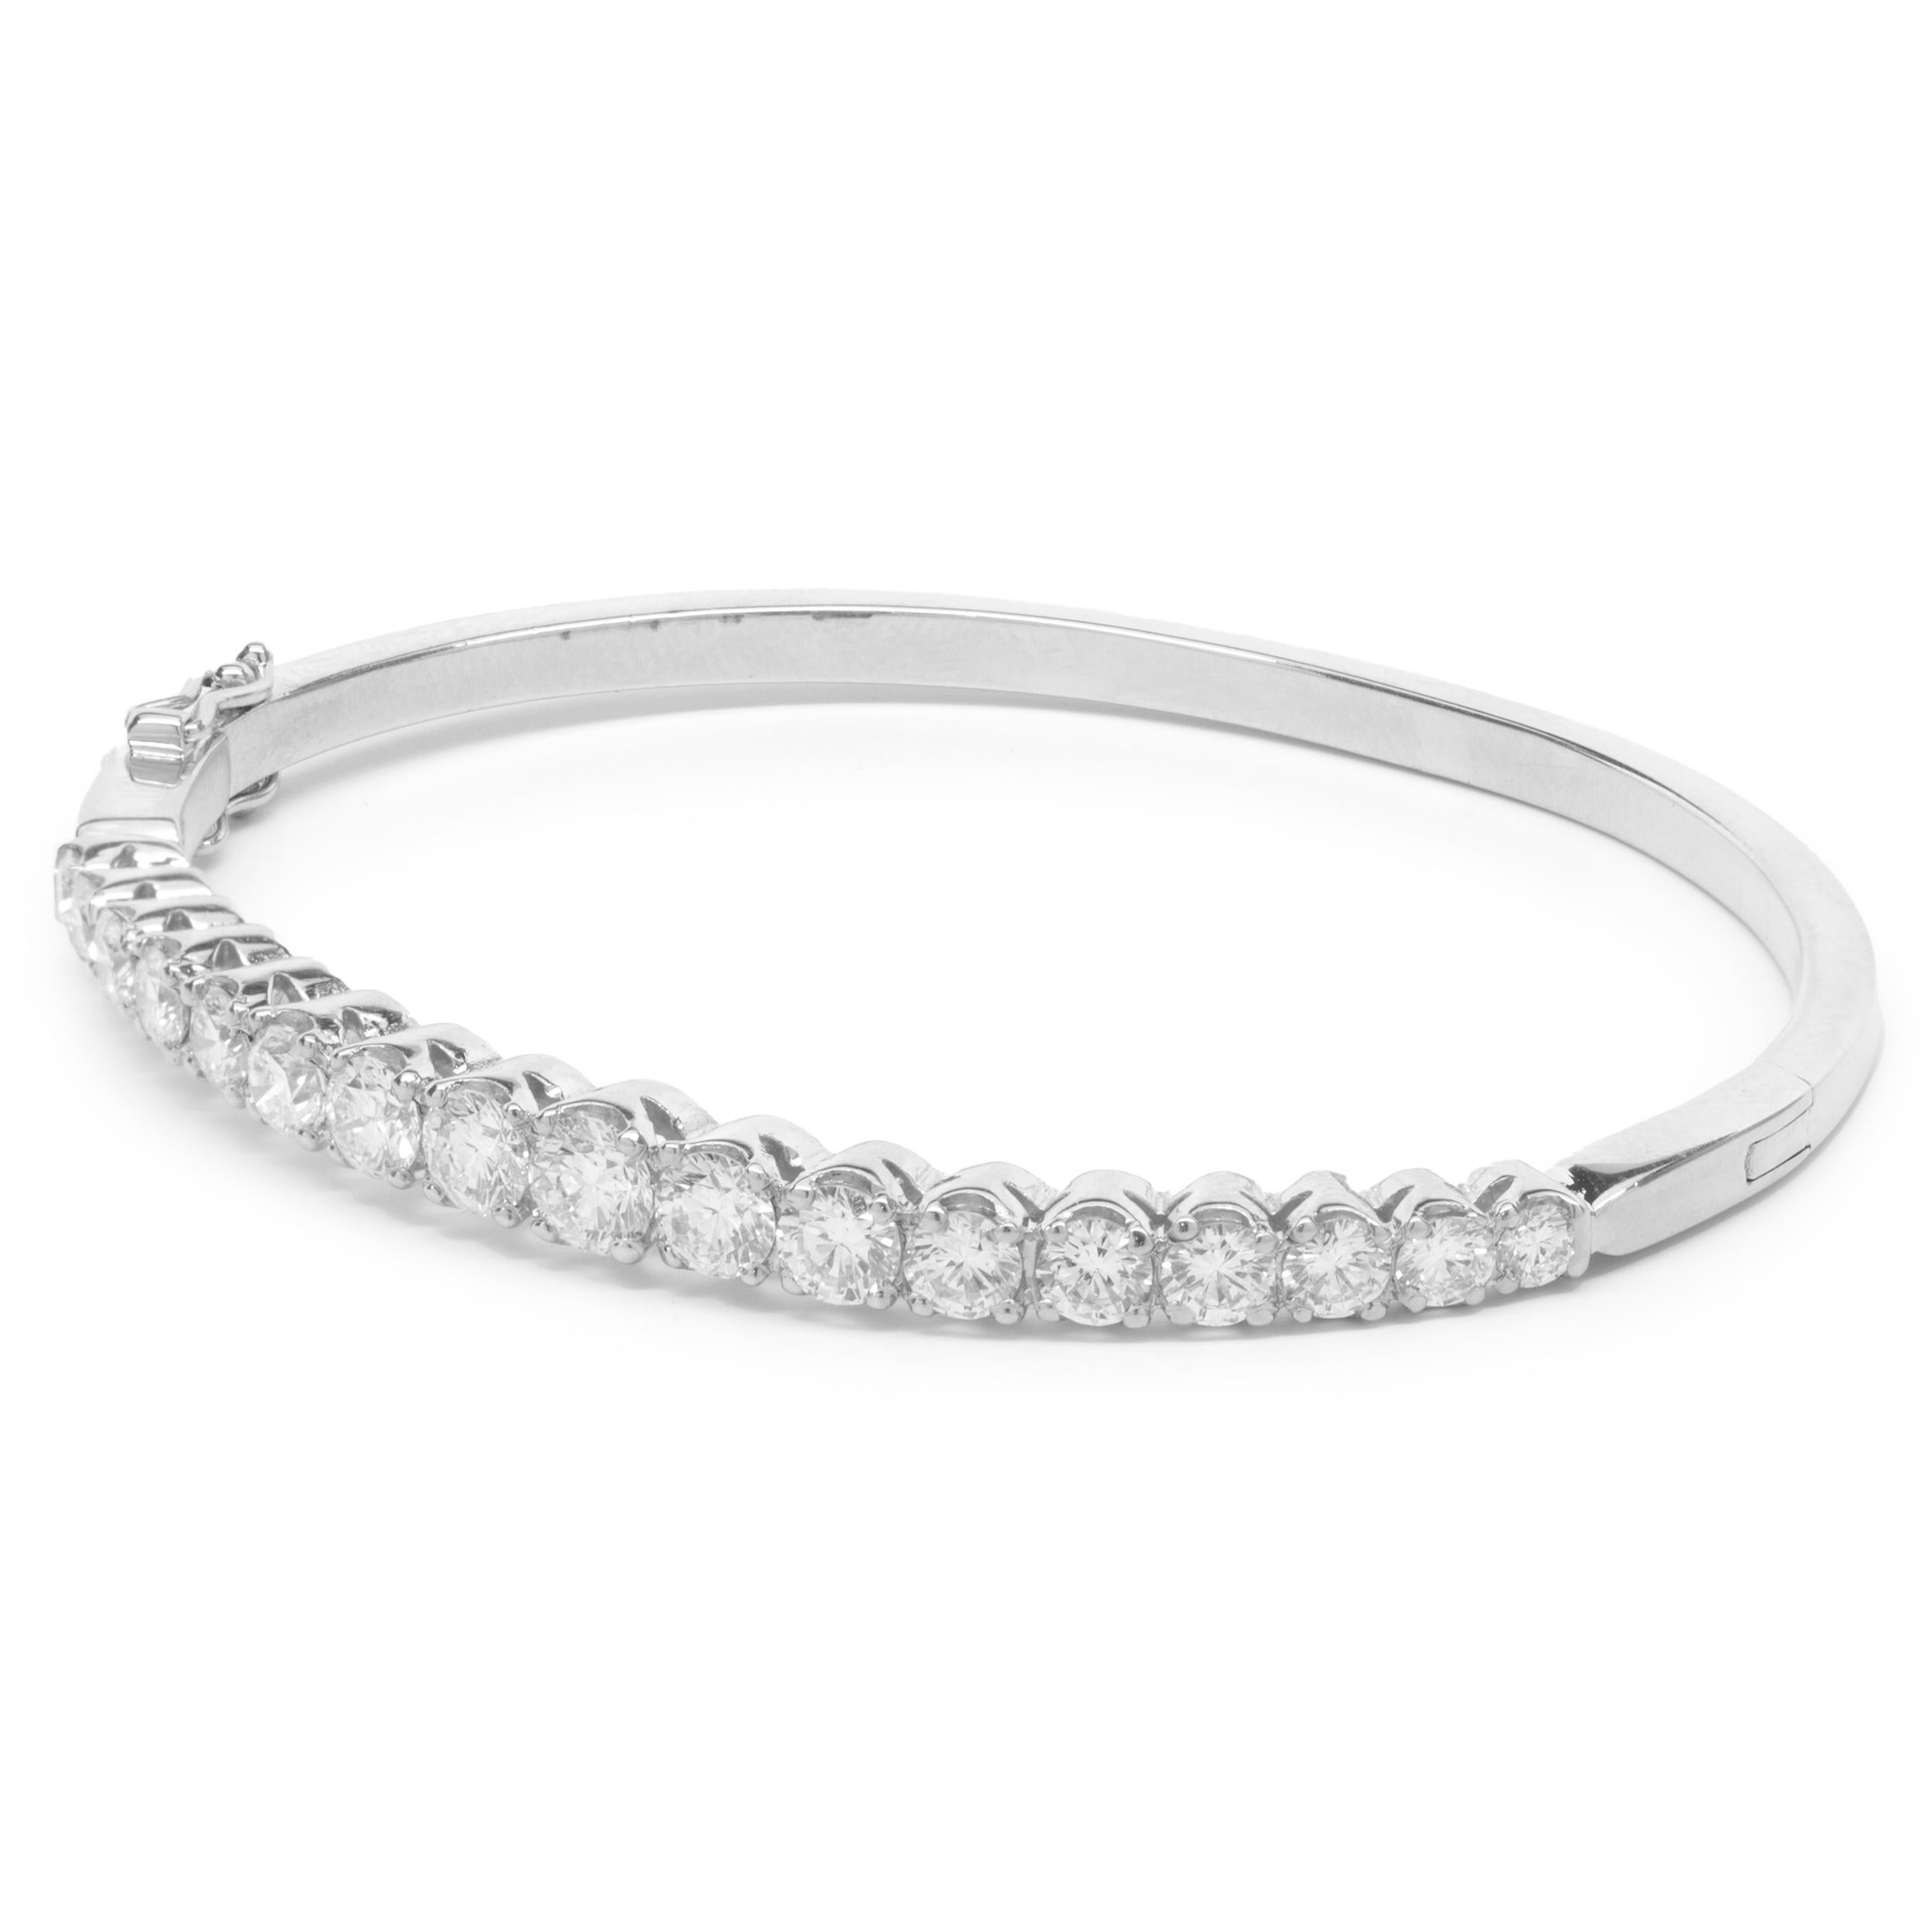 Designer : conçu sur mesure 
Matériau : or blanc 18K
Diamants : 23 diamants ronds de taille brillant = 5.00cttw
Couleur : H/I
Clarté : VS2
Dimensions : le bracelet convient à un poignet de 8 pouces 
Poids :  18.56 grammes
